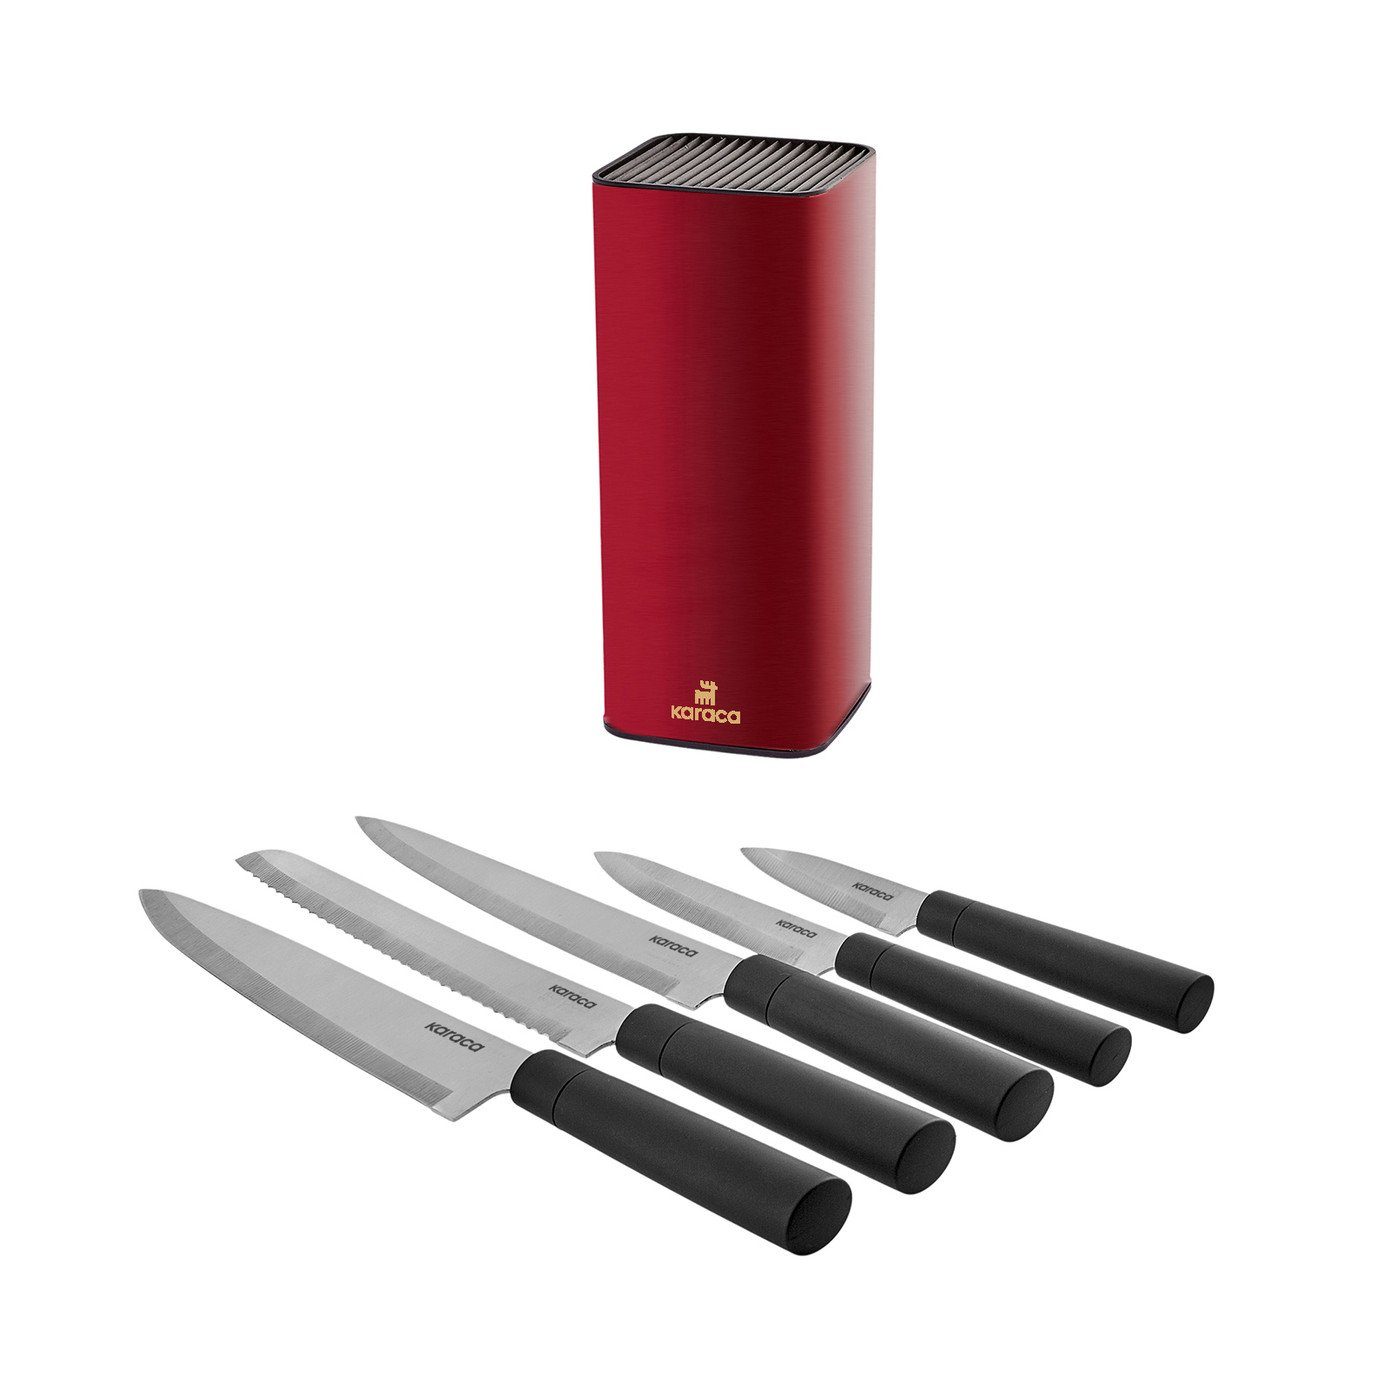 Messer-Set Messerset, Kochmesser, 6 Schneidemesser Grammy Karaca Teiliges Karaca Rot